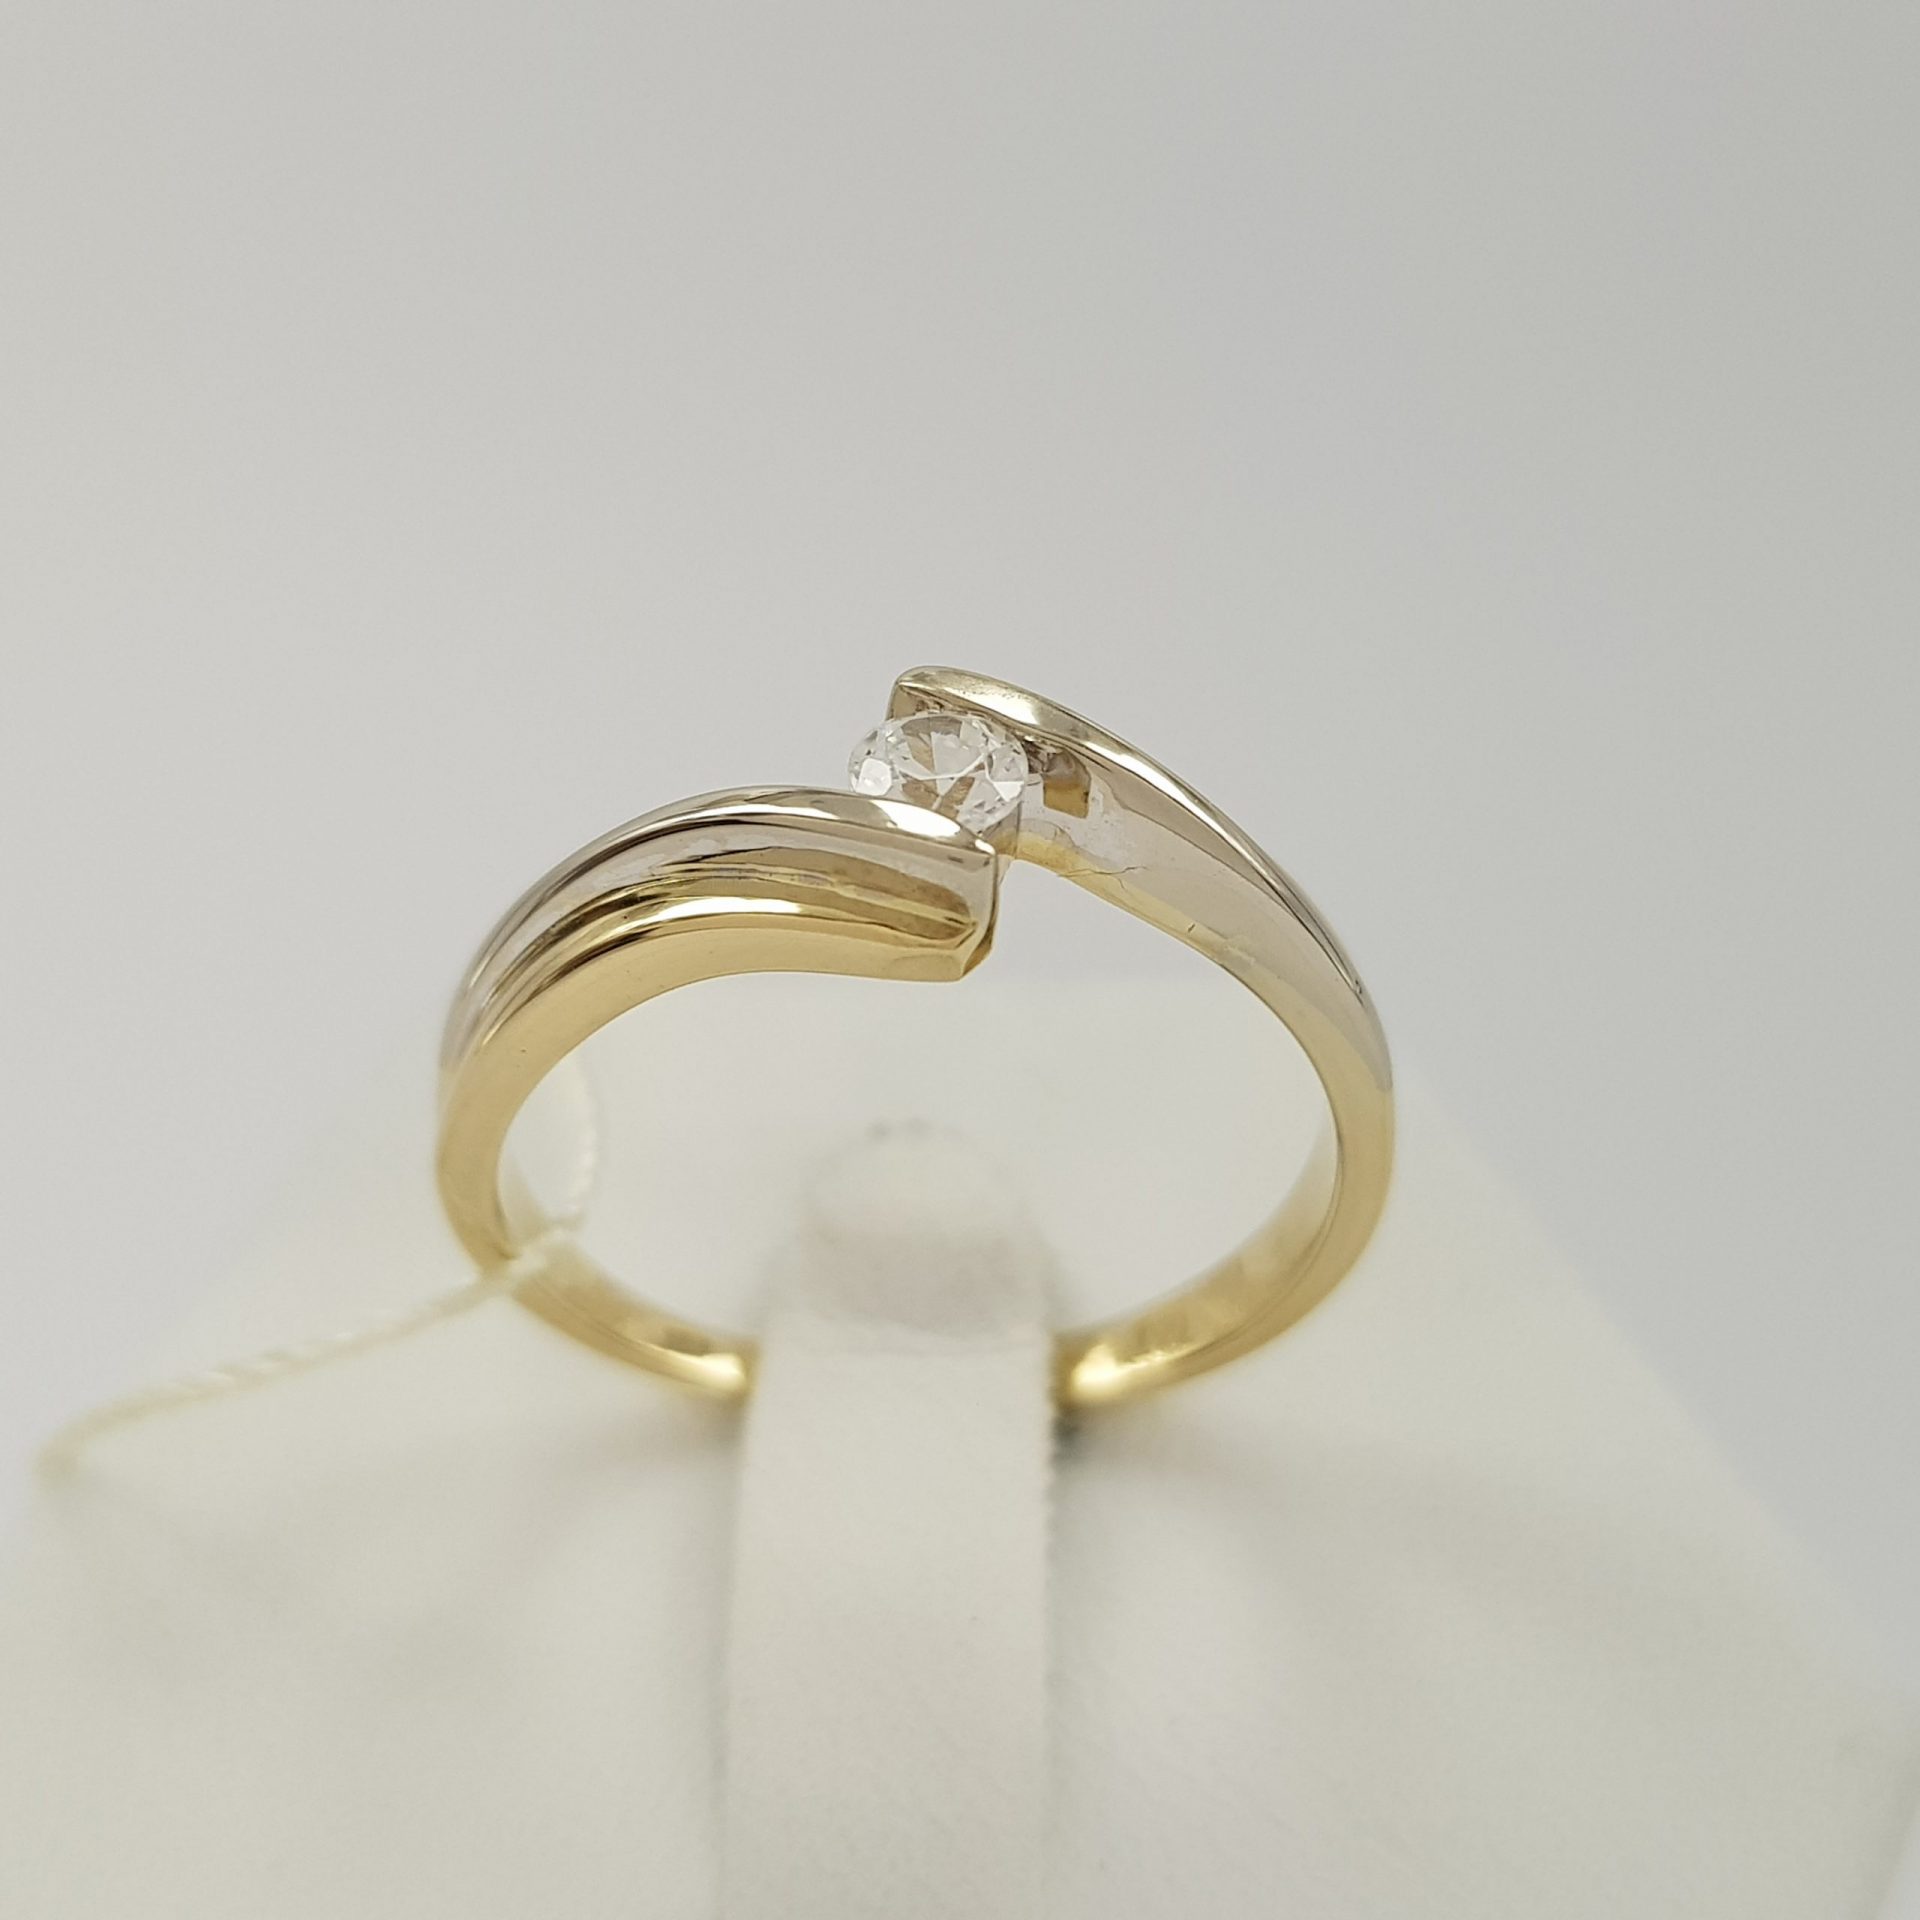 Symetryczny pierścionek wykonany z białego i żółtego złota